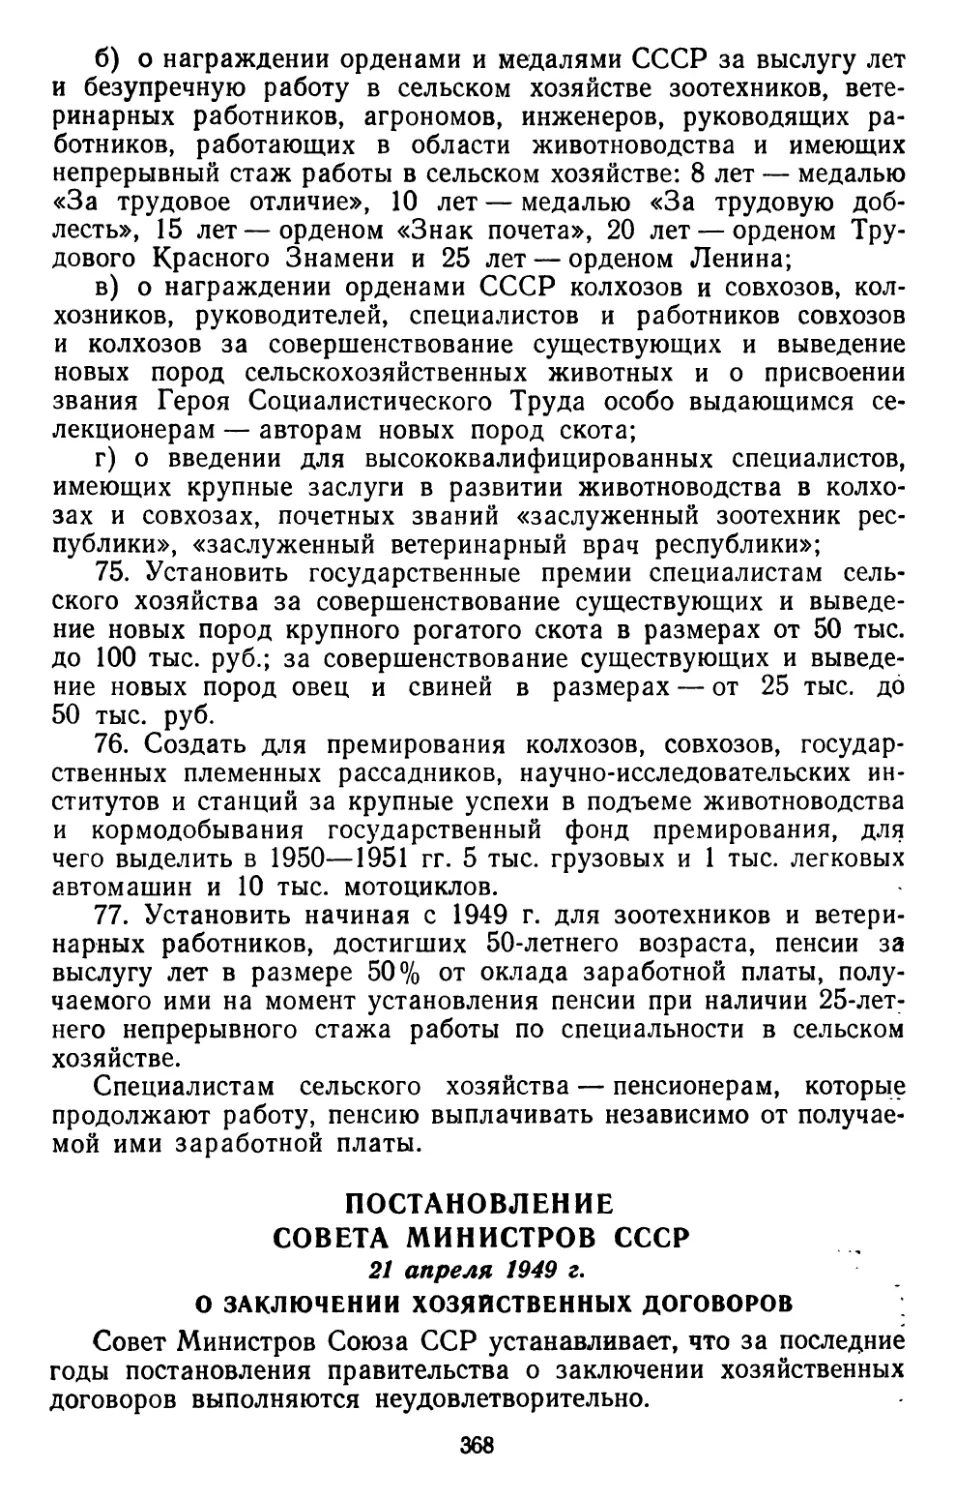 Постановление Совета Министров СССР, 21 апреля 1949 г. О заключении хозяйственных договоров